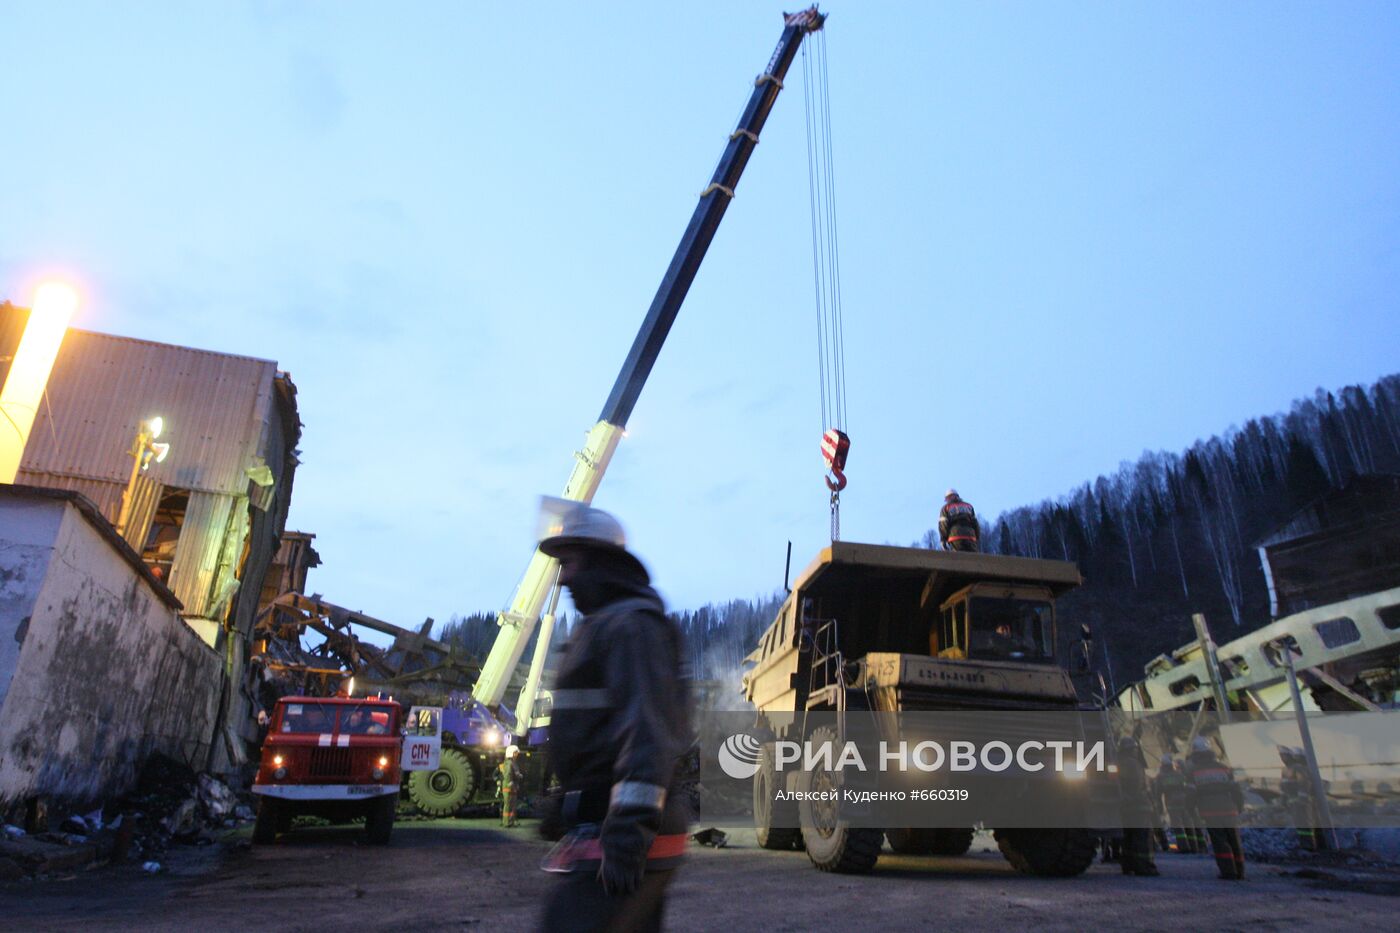 Сотрудники МЧС РФ проводят ремонтно-восстановительные работы